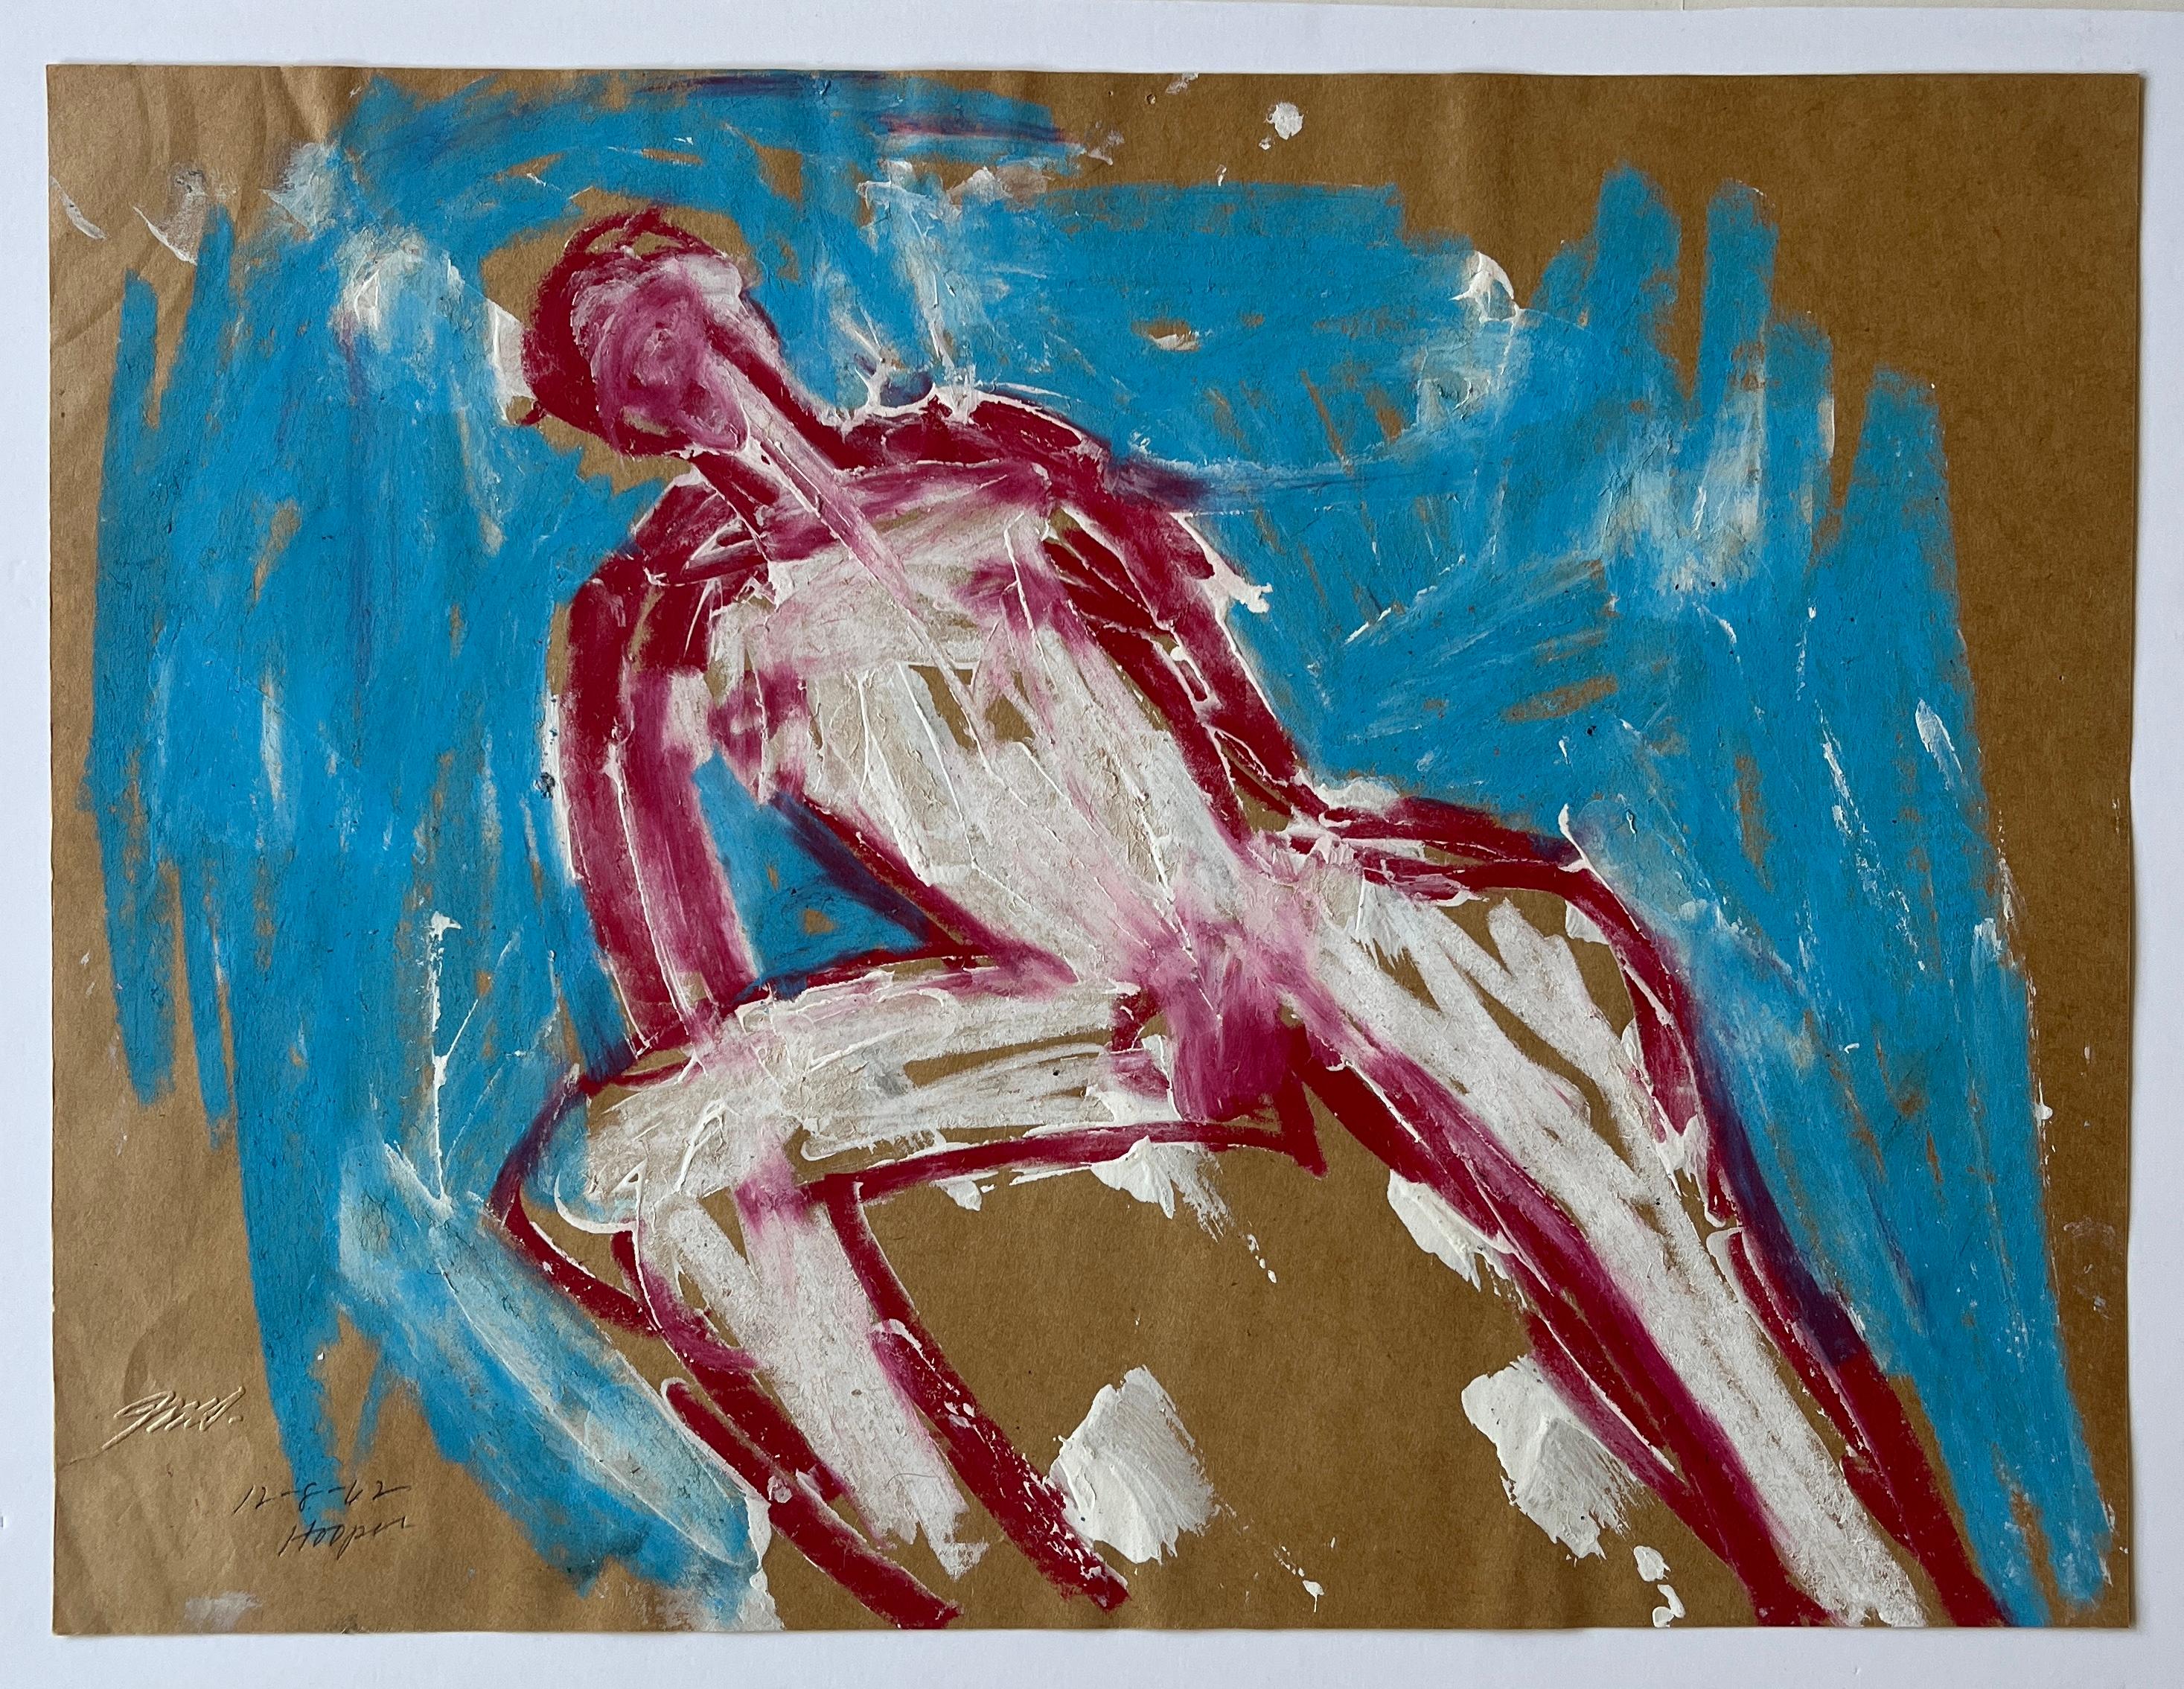 Jack Hooper
"Nu souligné de rouge sur turquoise"
8 décembre 1962
Gouache et pastel sur papier
14.5 "x11" non encadré
Signé et daté au crayon en bas à gauche

Cette œuvre d'art réalisée en 1962 par Jack Whiting représente une figure abstraite aux